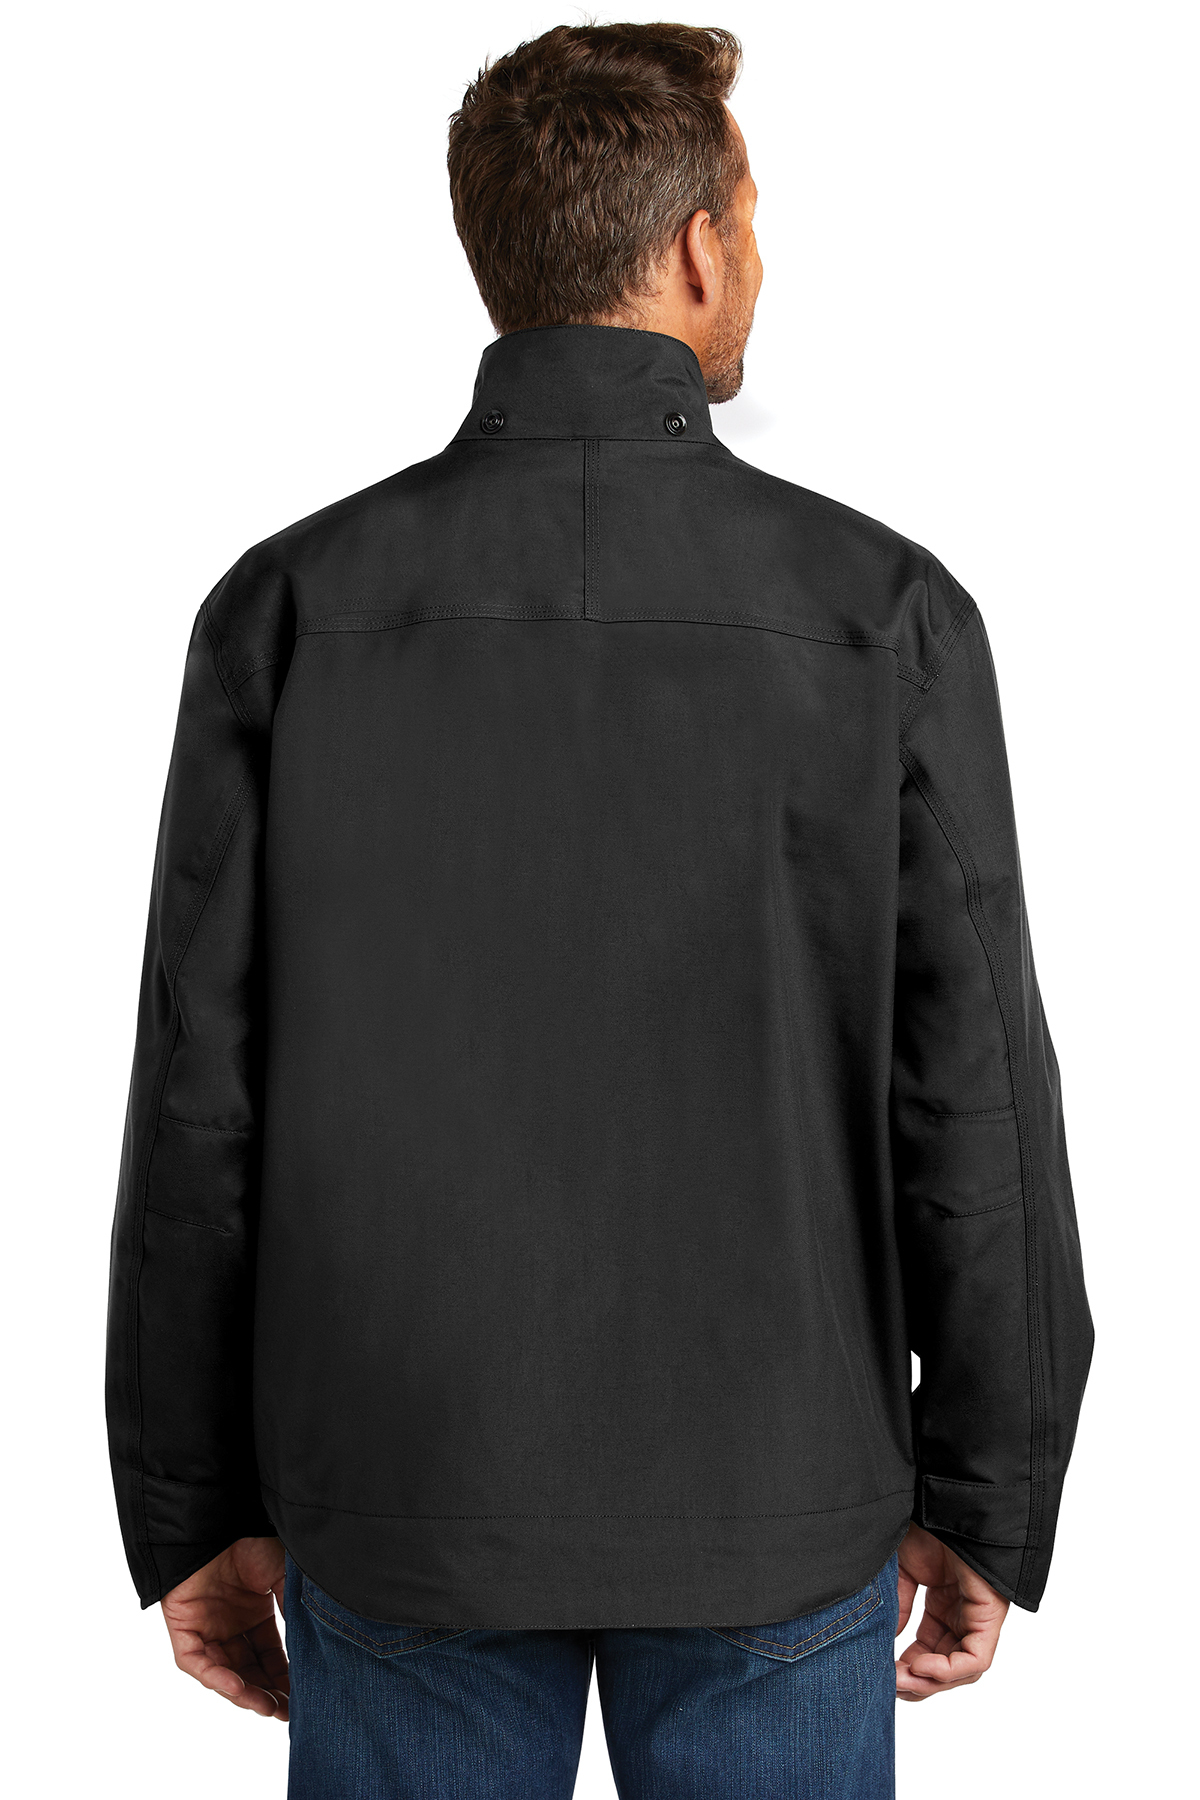 Carhartt Shoreline Jacket | Product | Company Casuals